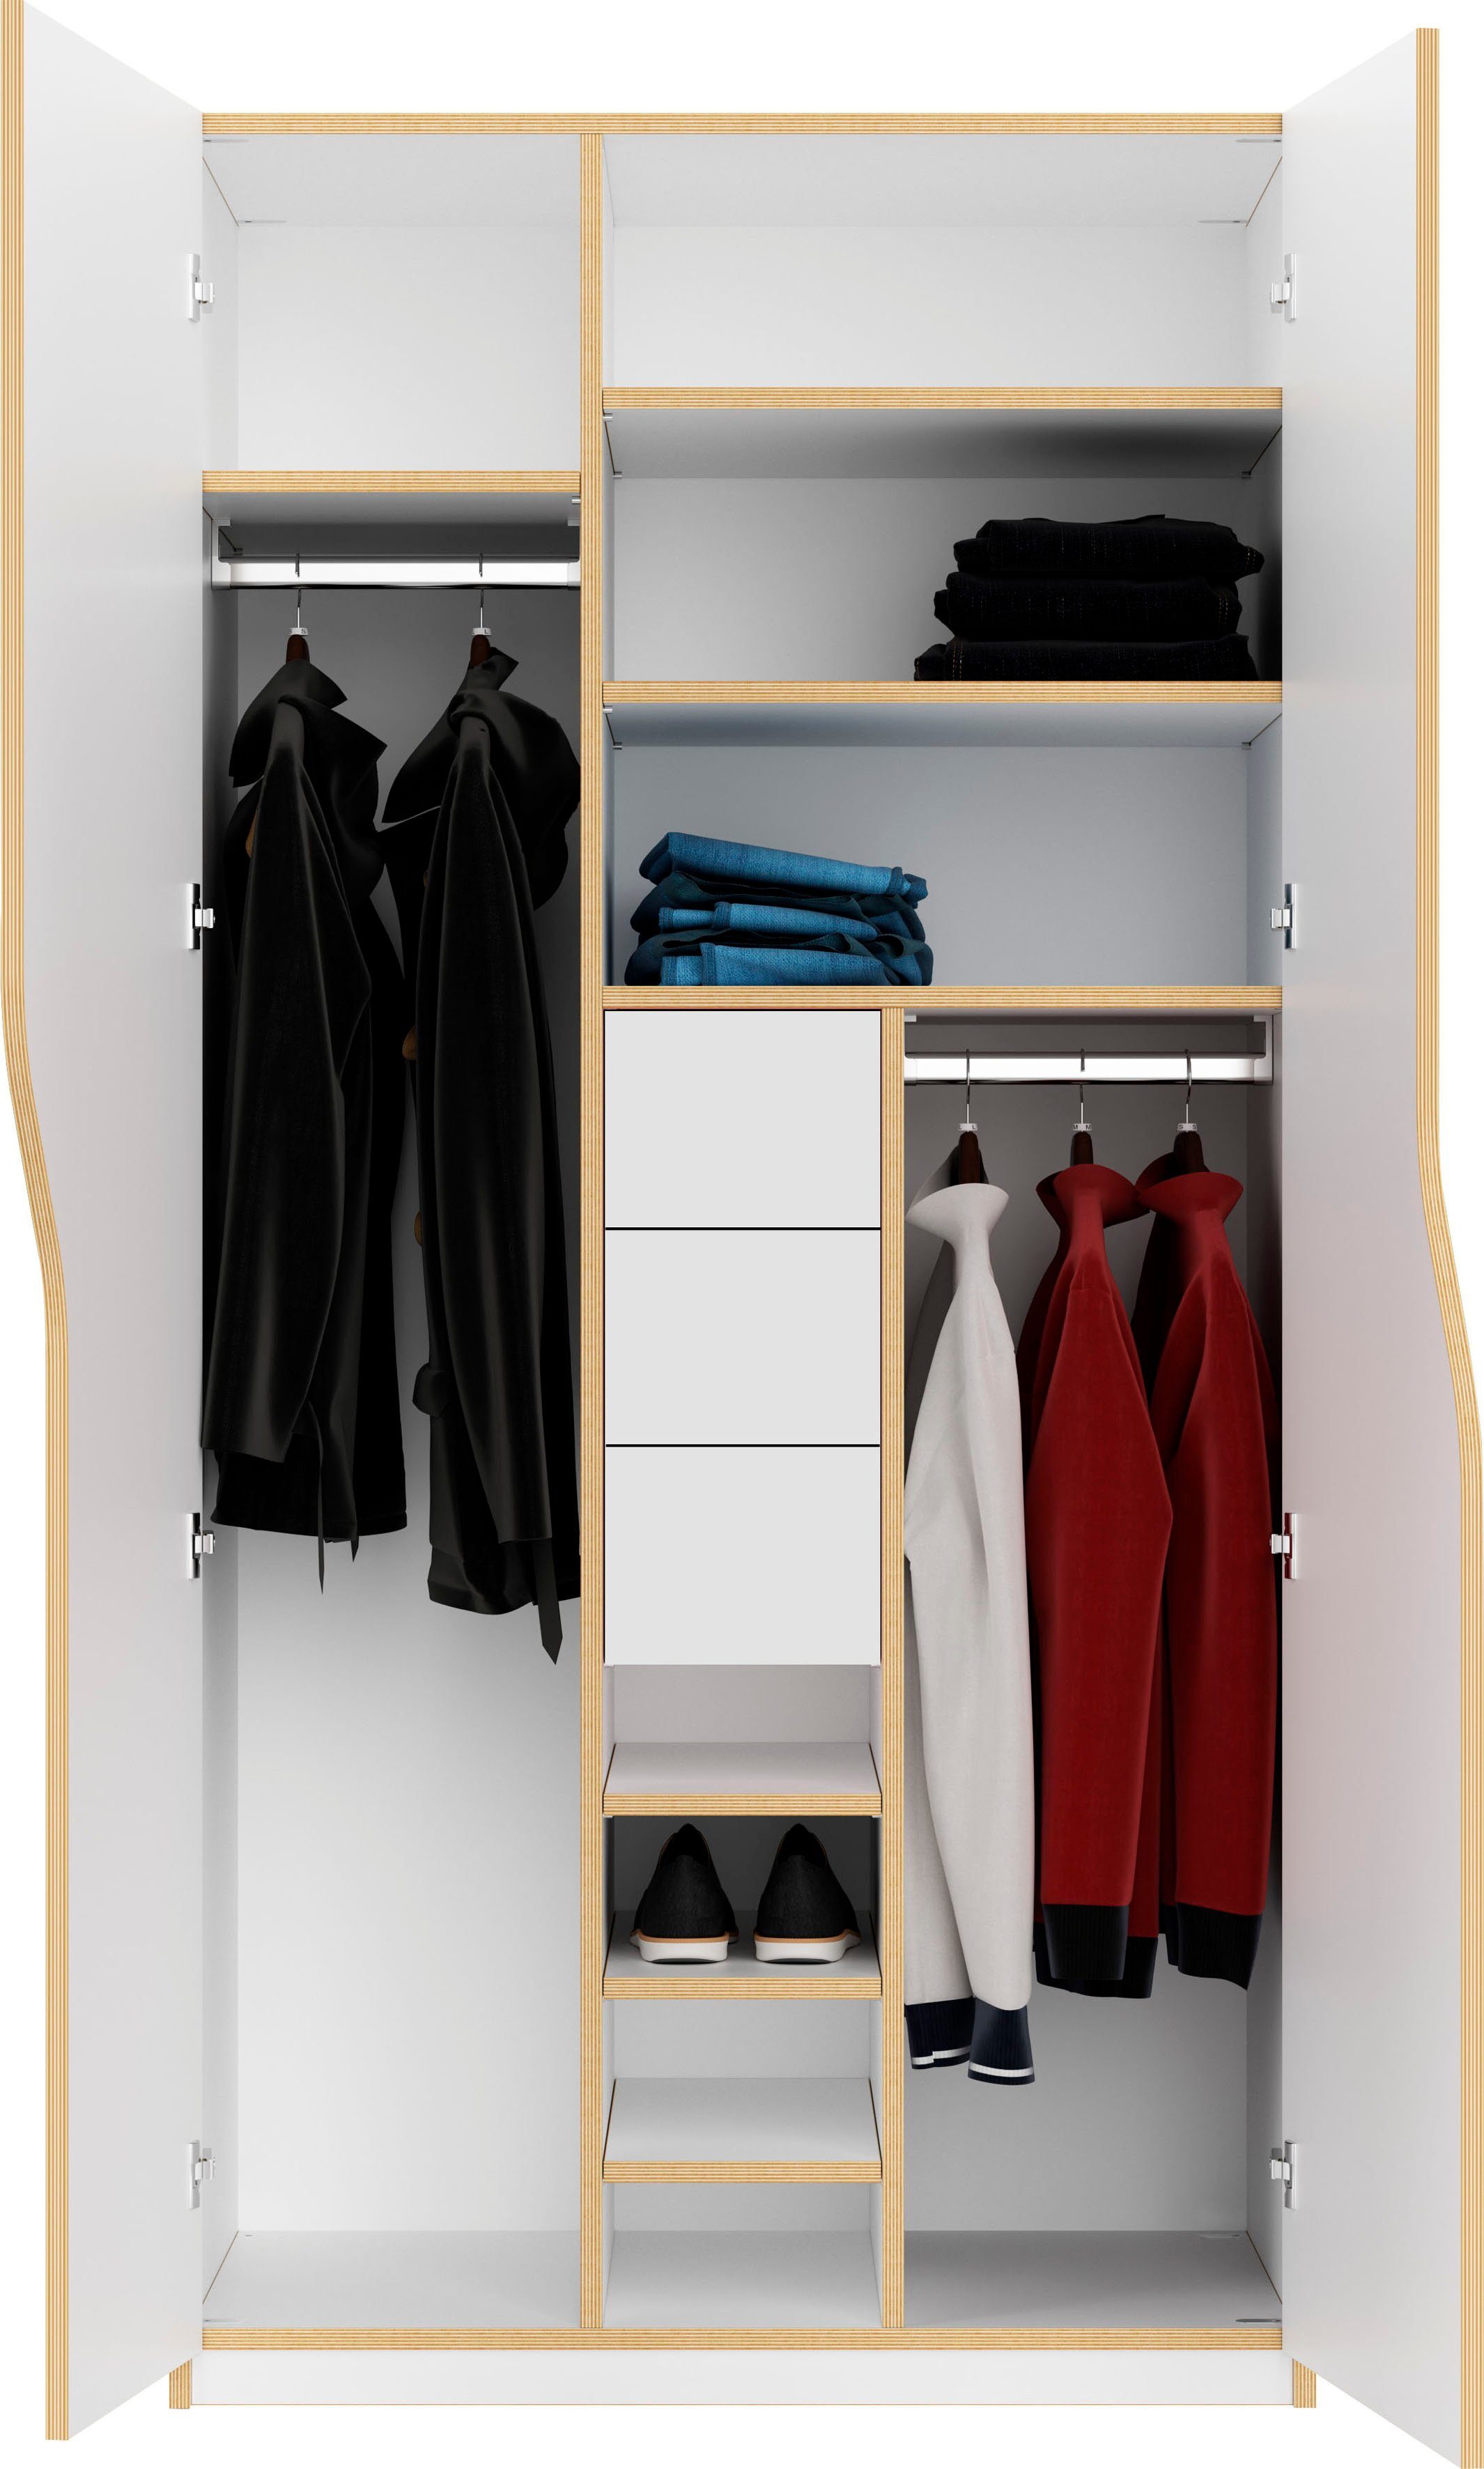 Müller SMALL LIVING Kleiderschrank PLANE Ausstattung Nr. 2 Schubladen und Inklusive Kleiderstangen 3 innenliegenden 2